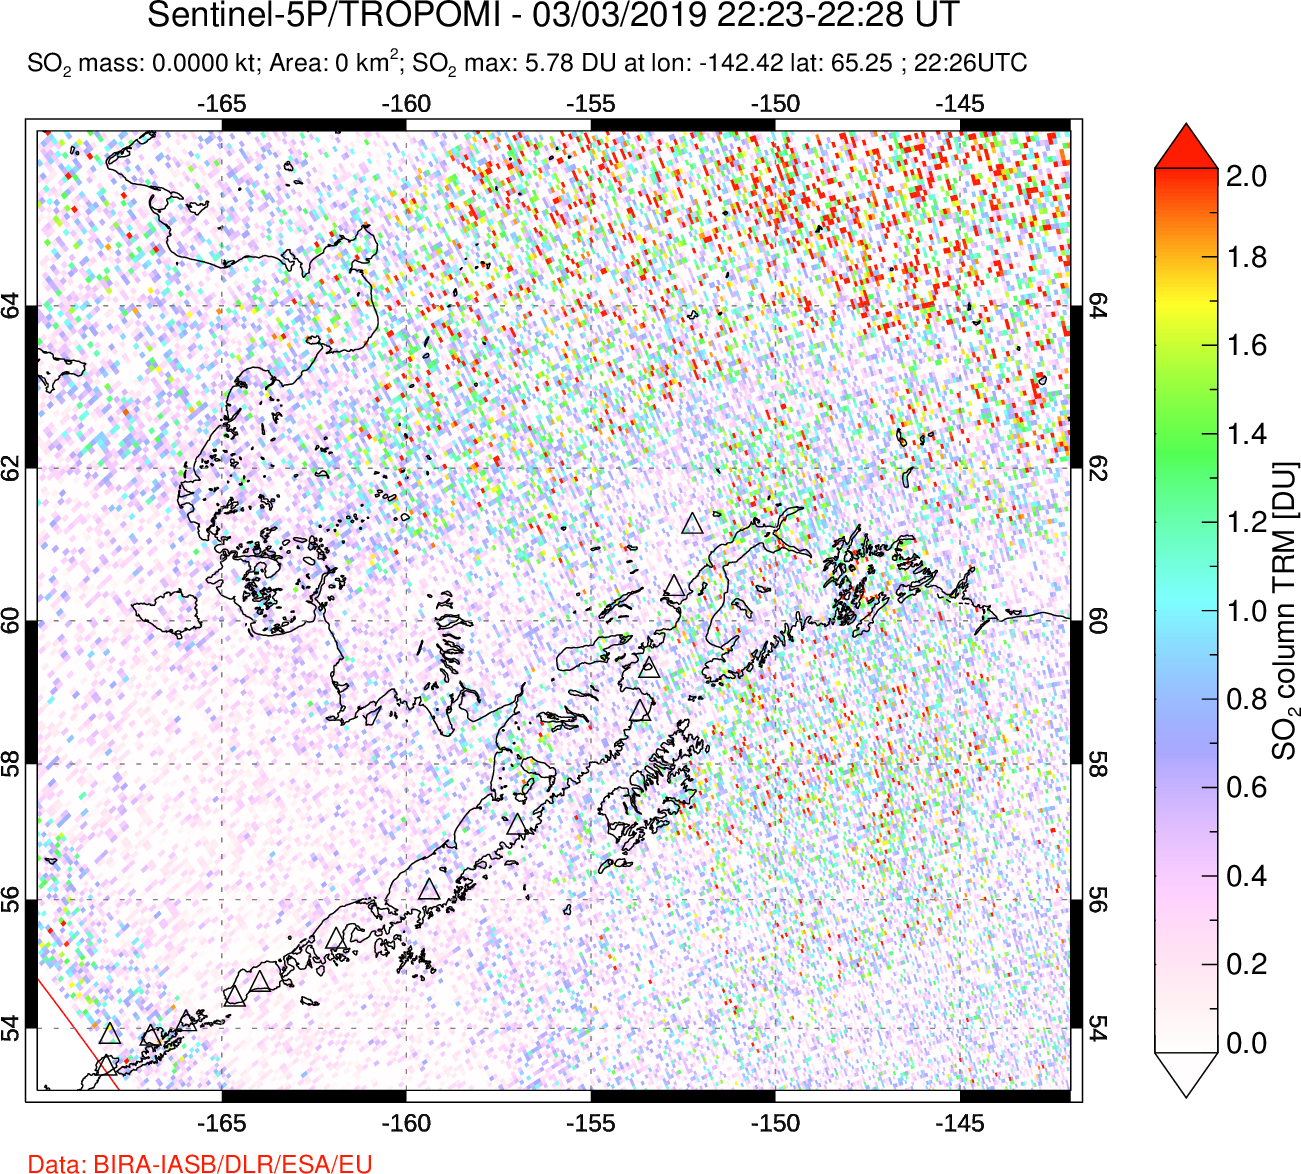 A sulfur dioxide image over Alaska, USA on Mar 03, 2019.